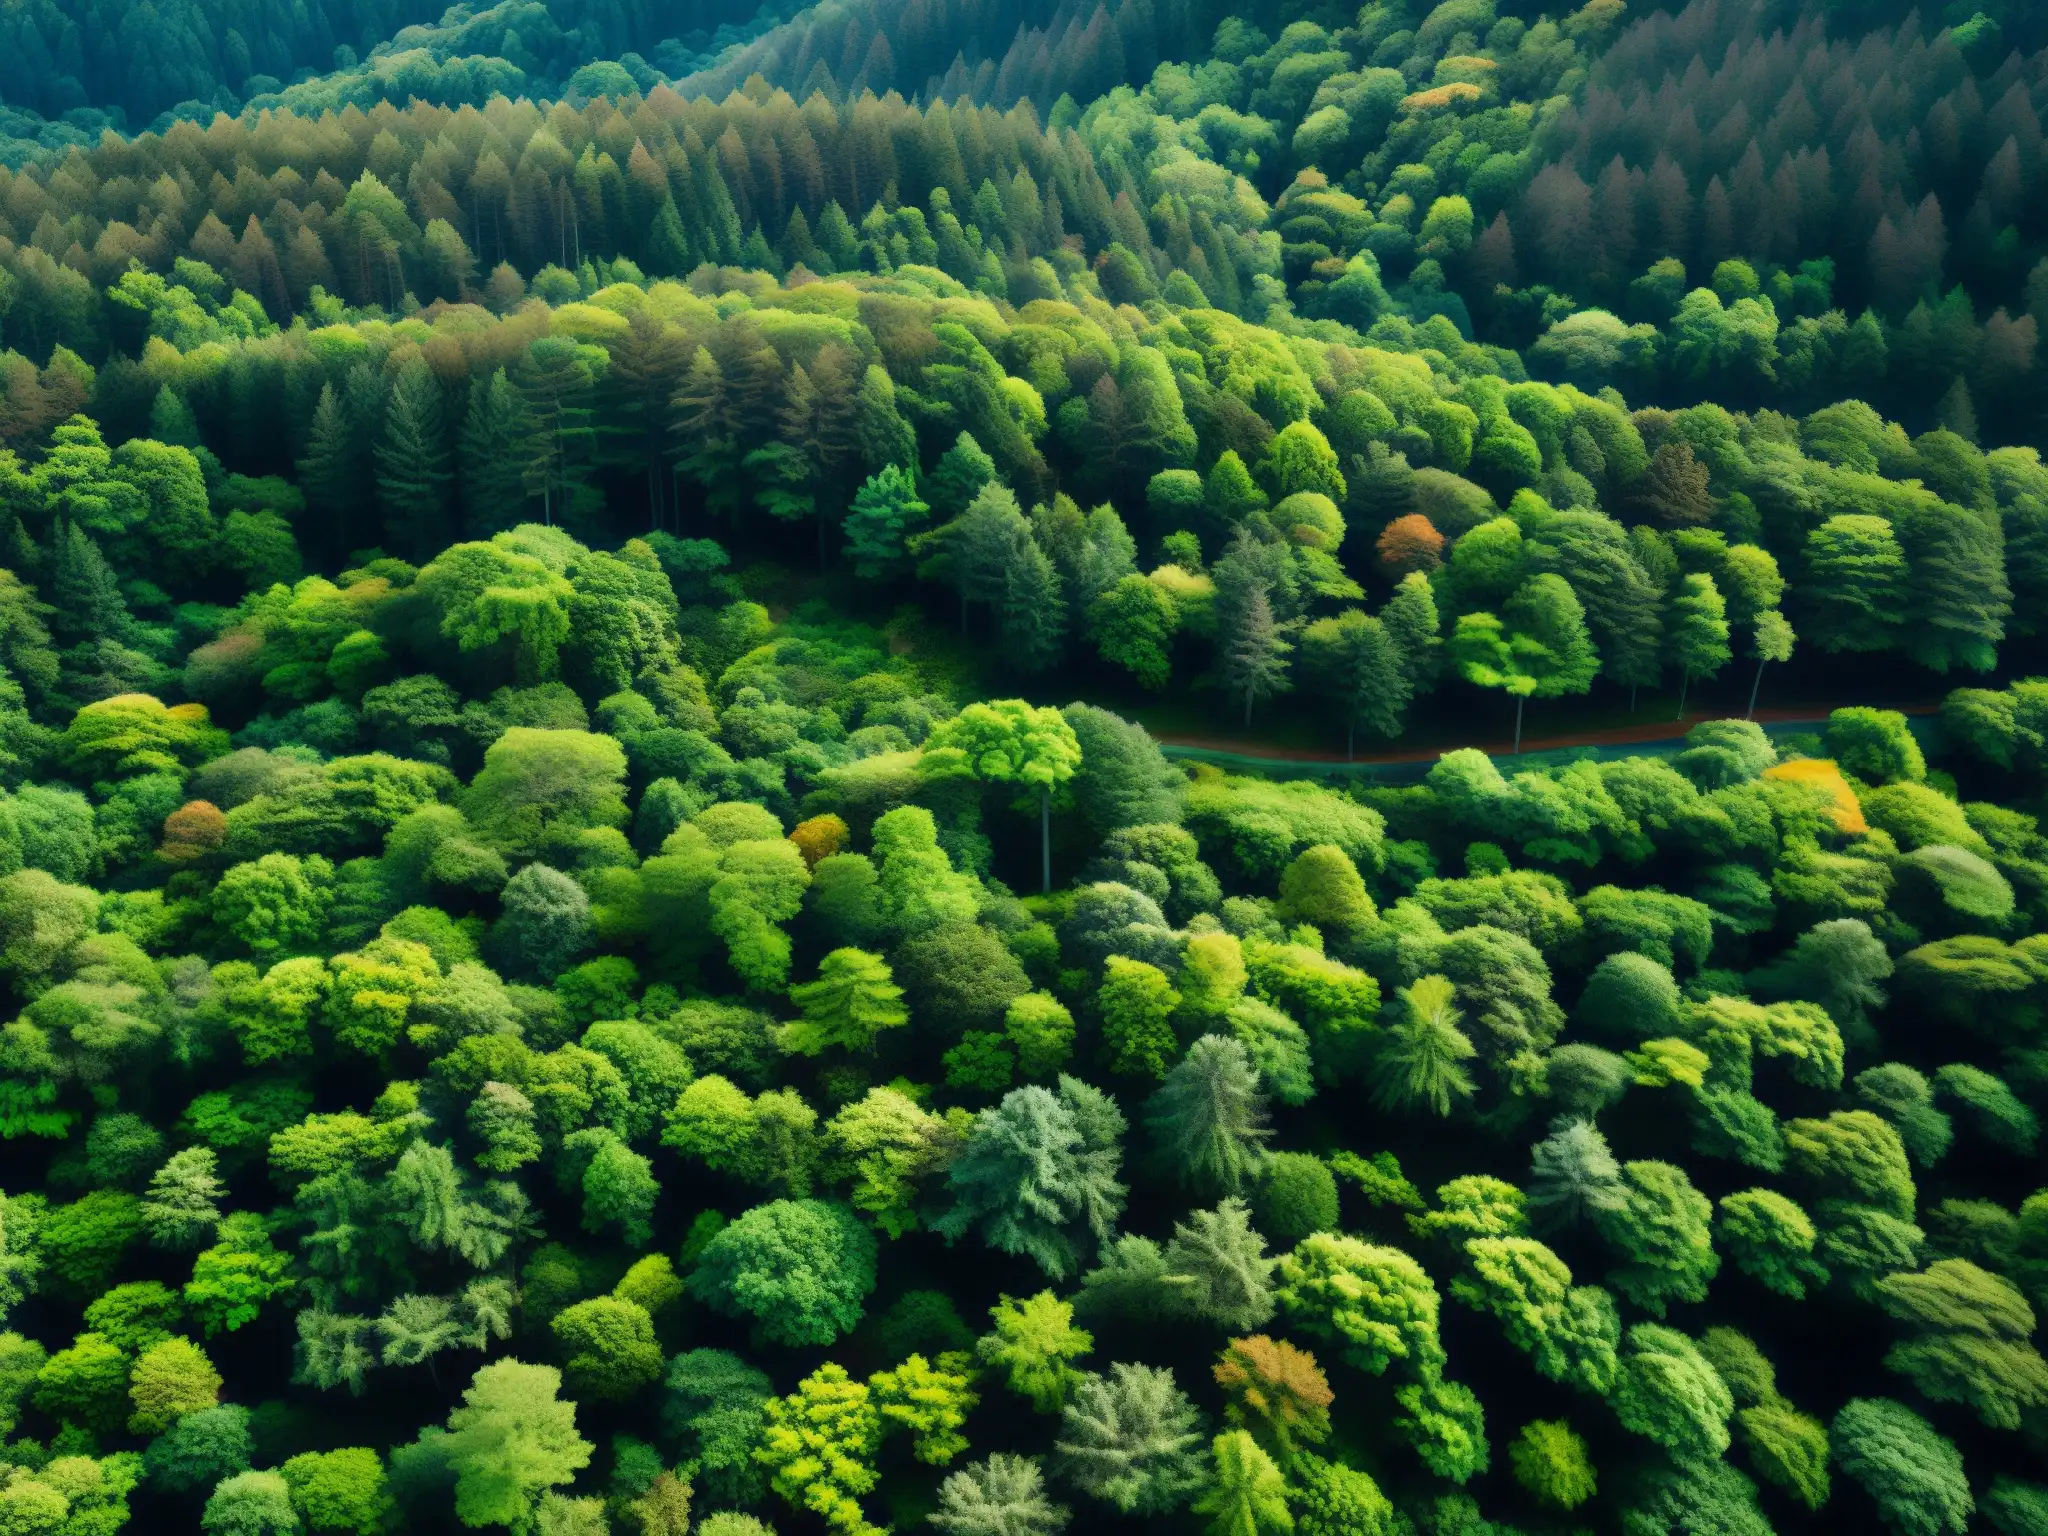 Versión digital del misterioso y hermoso bosque de suicidios Aokigahara, con densa vegetación y luz solar filtrándose entre los árboles